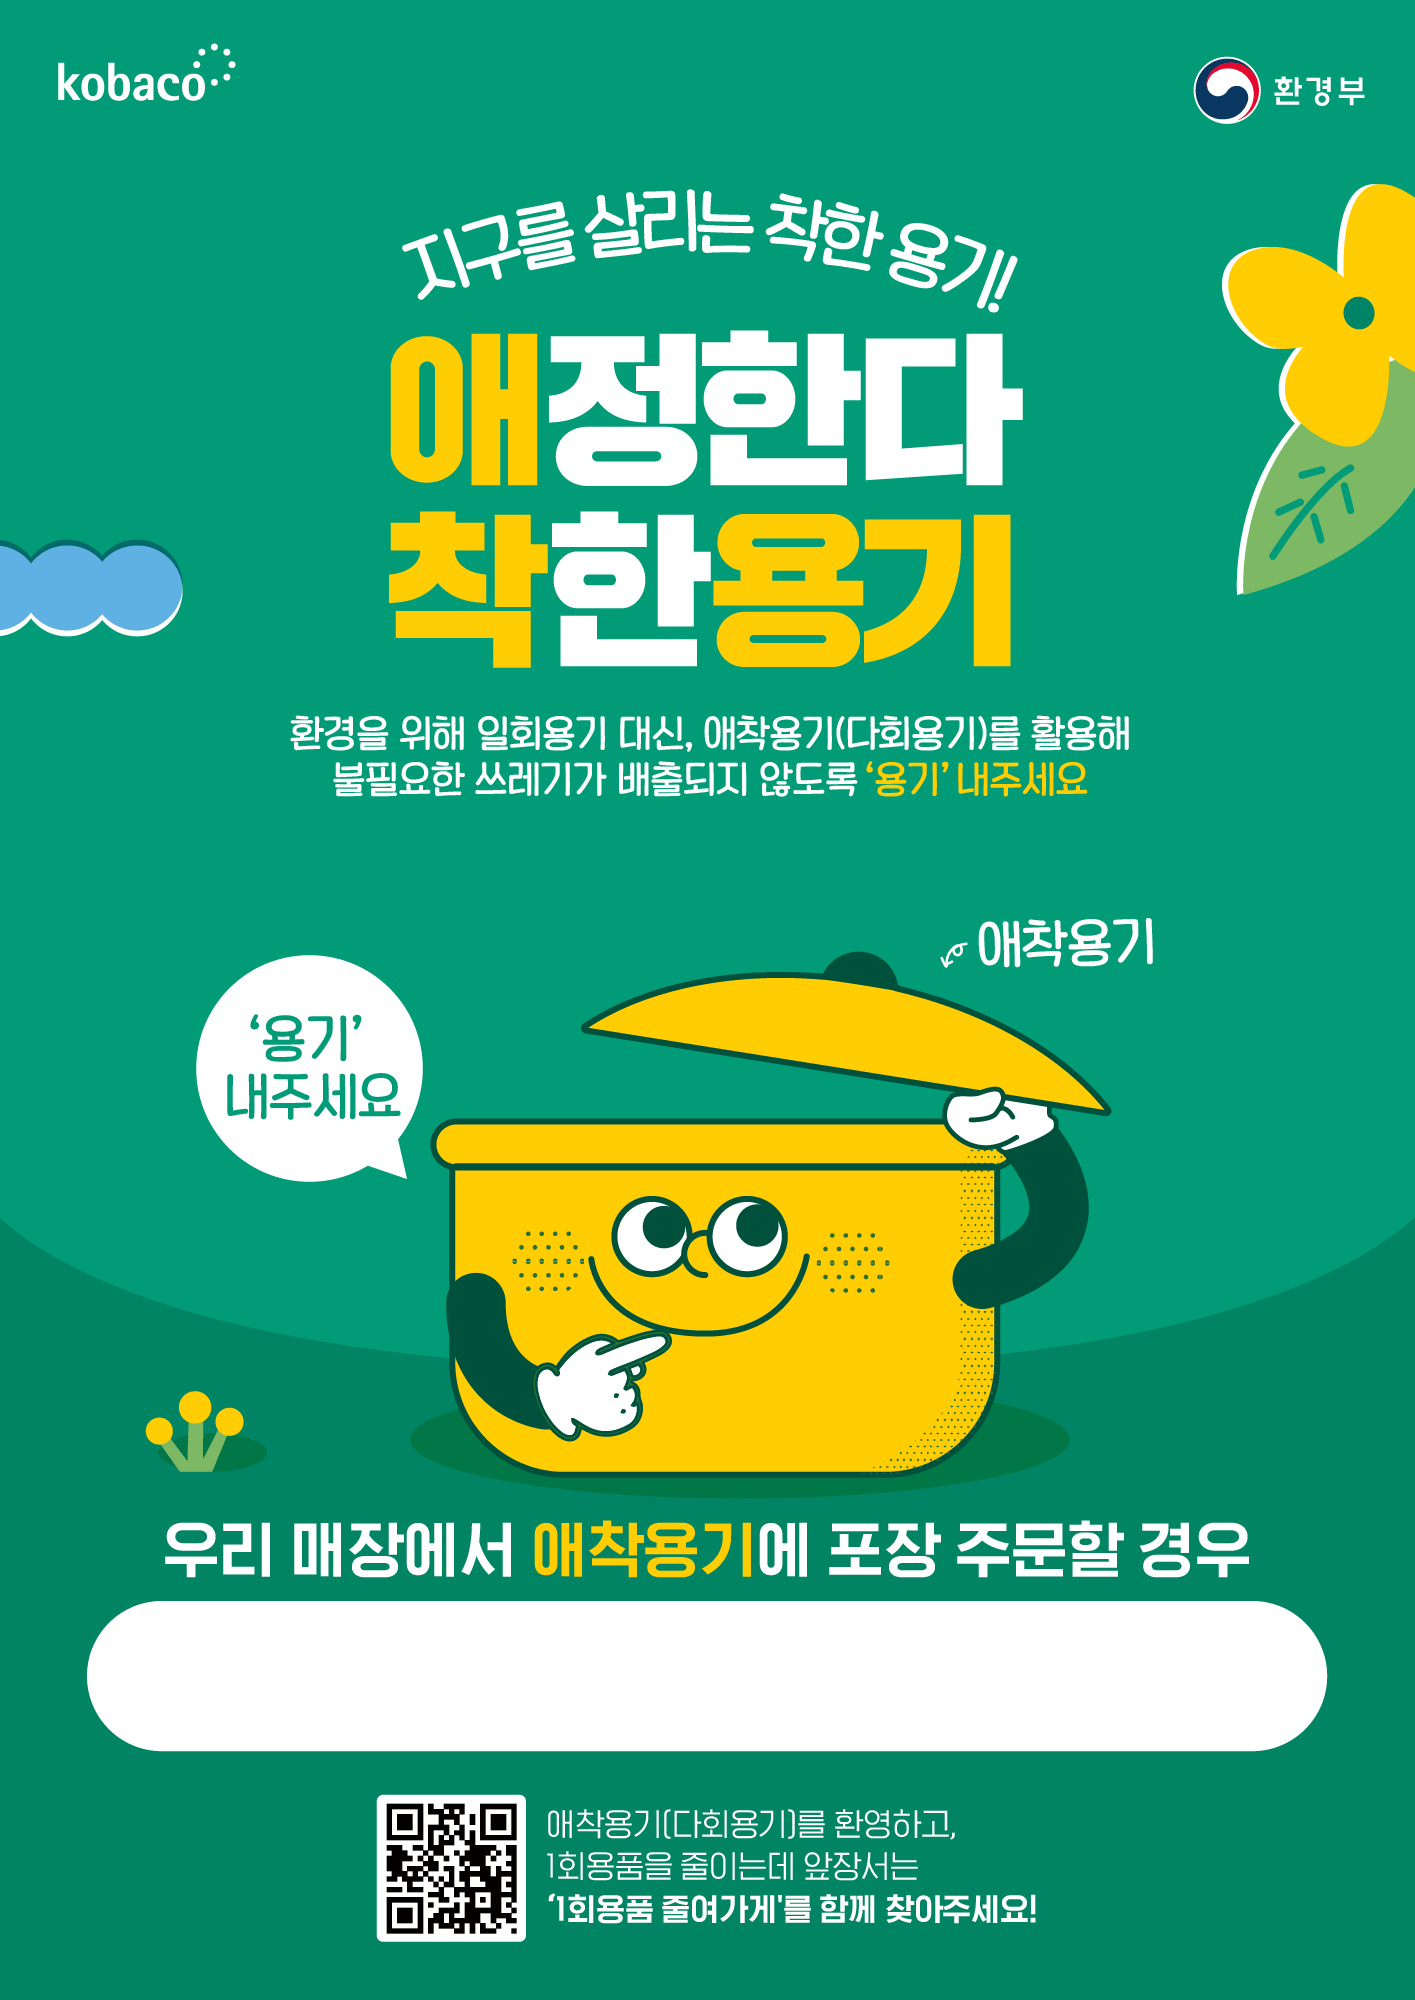 1회용품 줄여가게  찾기 캠페인 홍보